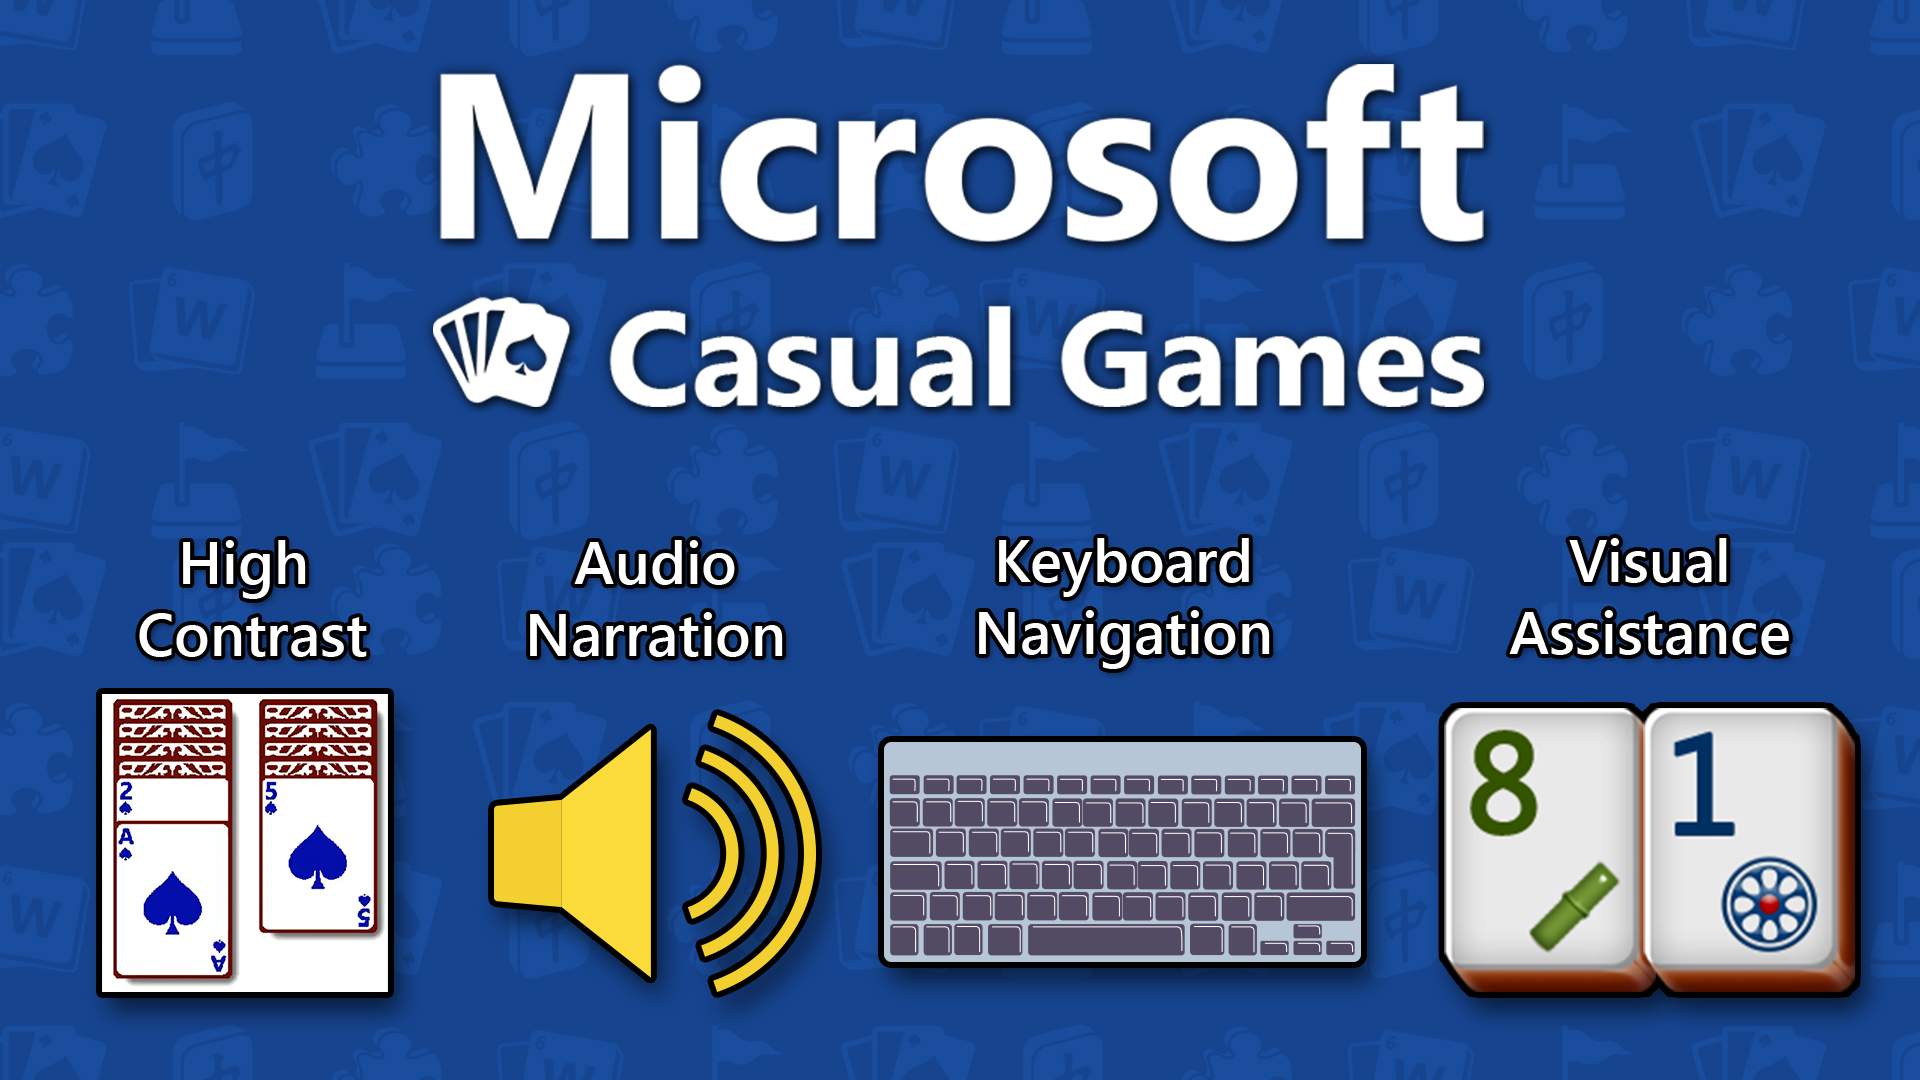 El logotipo de Microsoft Casual Games con cuatro gráficos que representan alto contraste, narración de audio, navegación con teclado y asistencia visual.